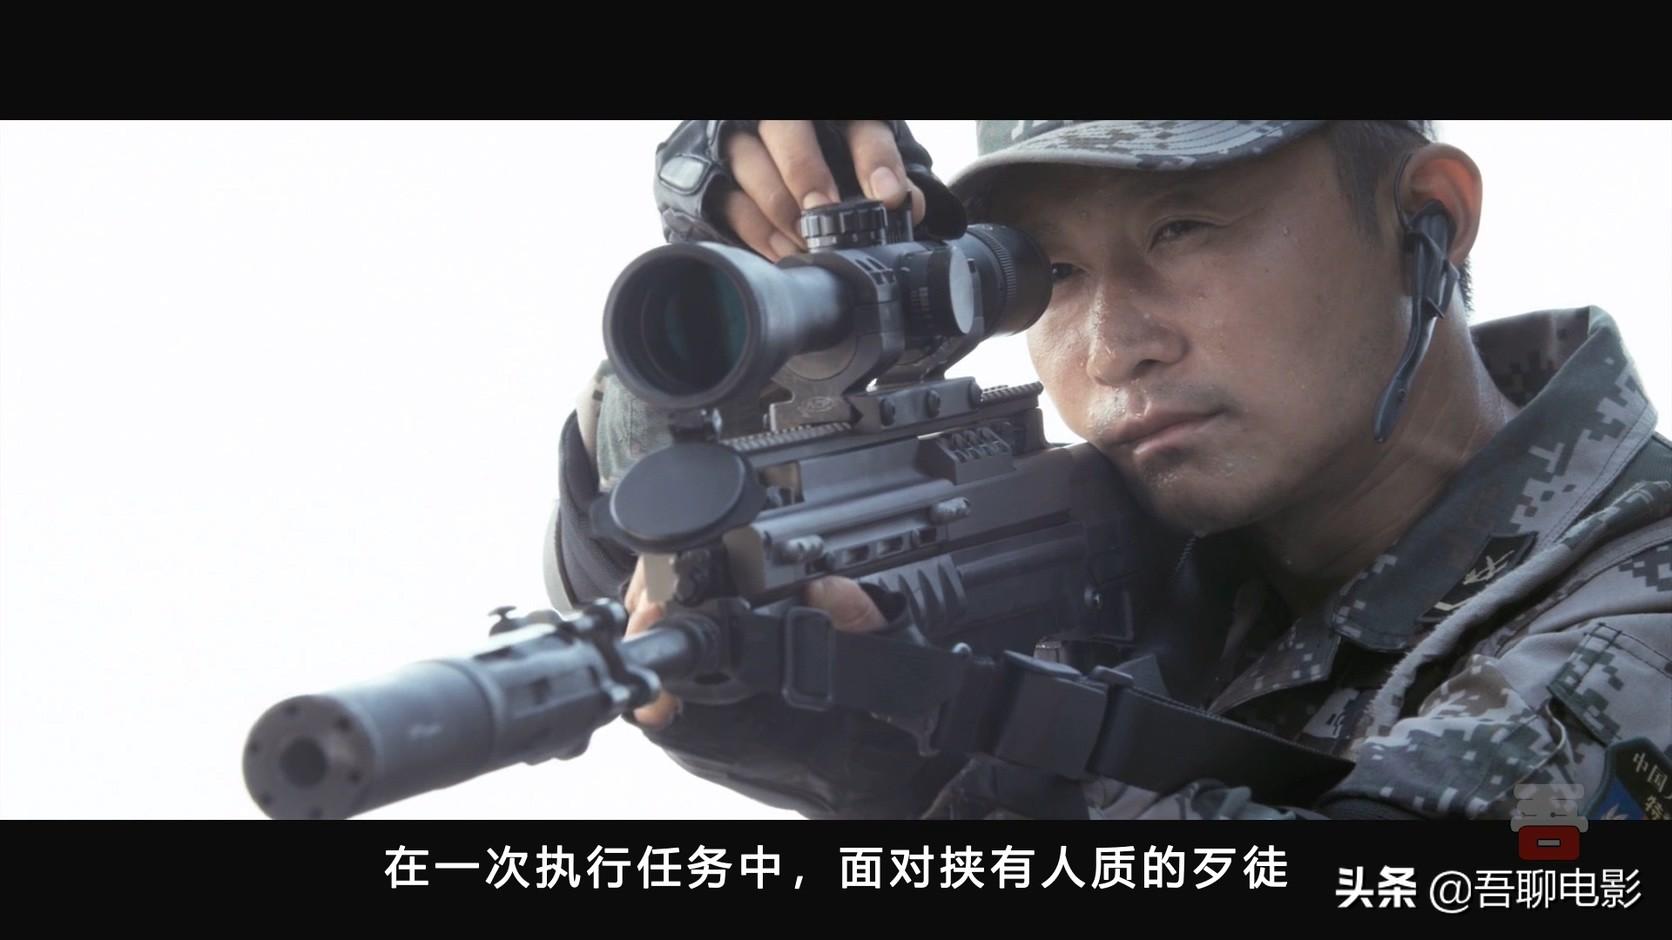 吴京再度燃爆院线，回顾他首部影片《战狼》（2、 将命题:“福州电影院从3月到5月一直在播放电影《战狼2》”用语义网络表示）